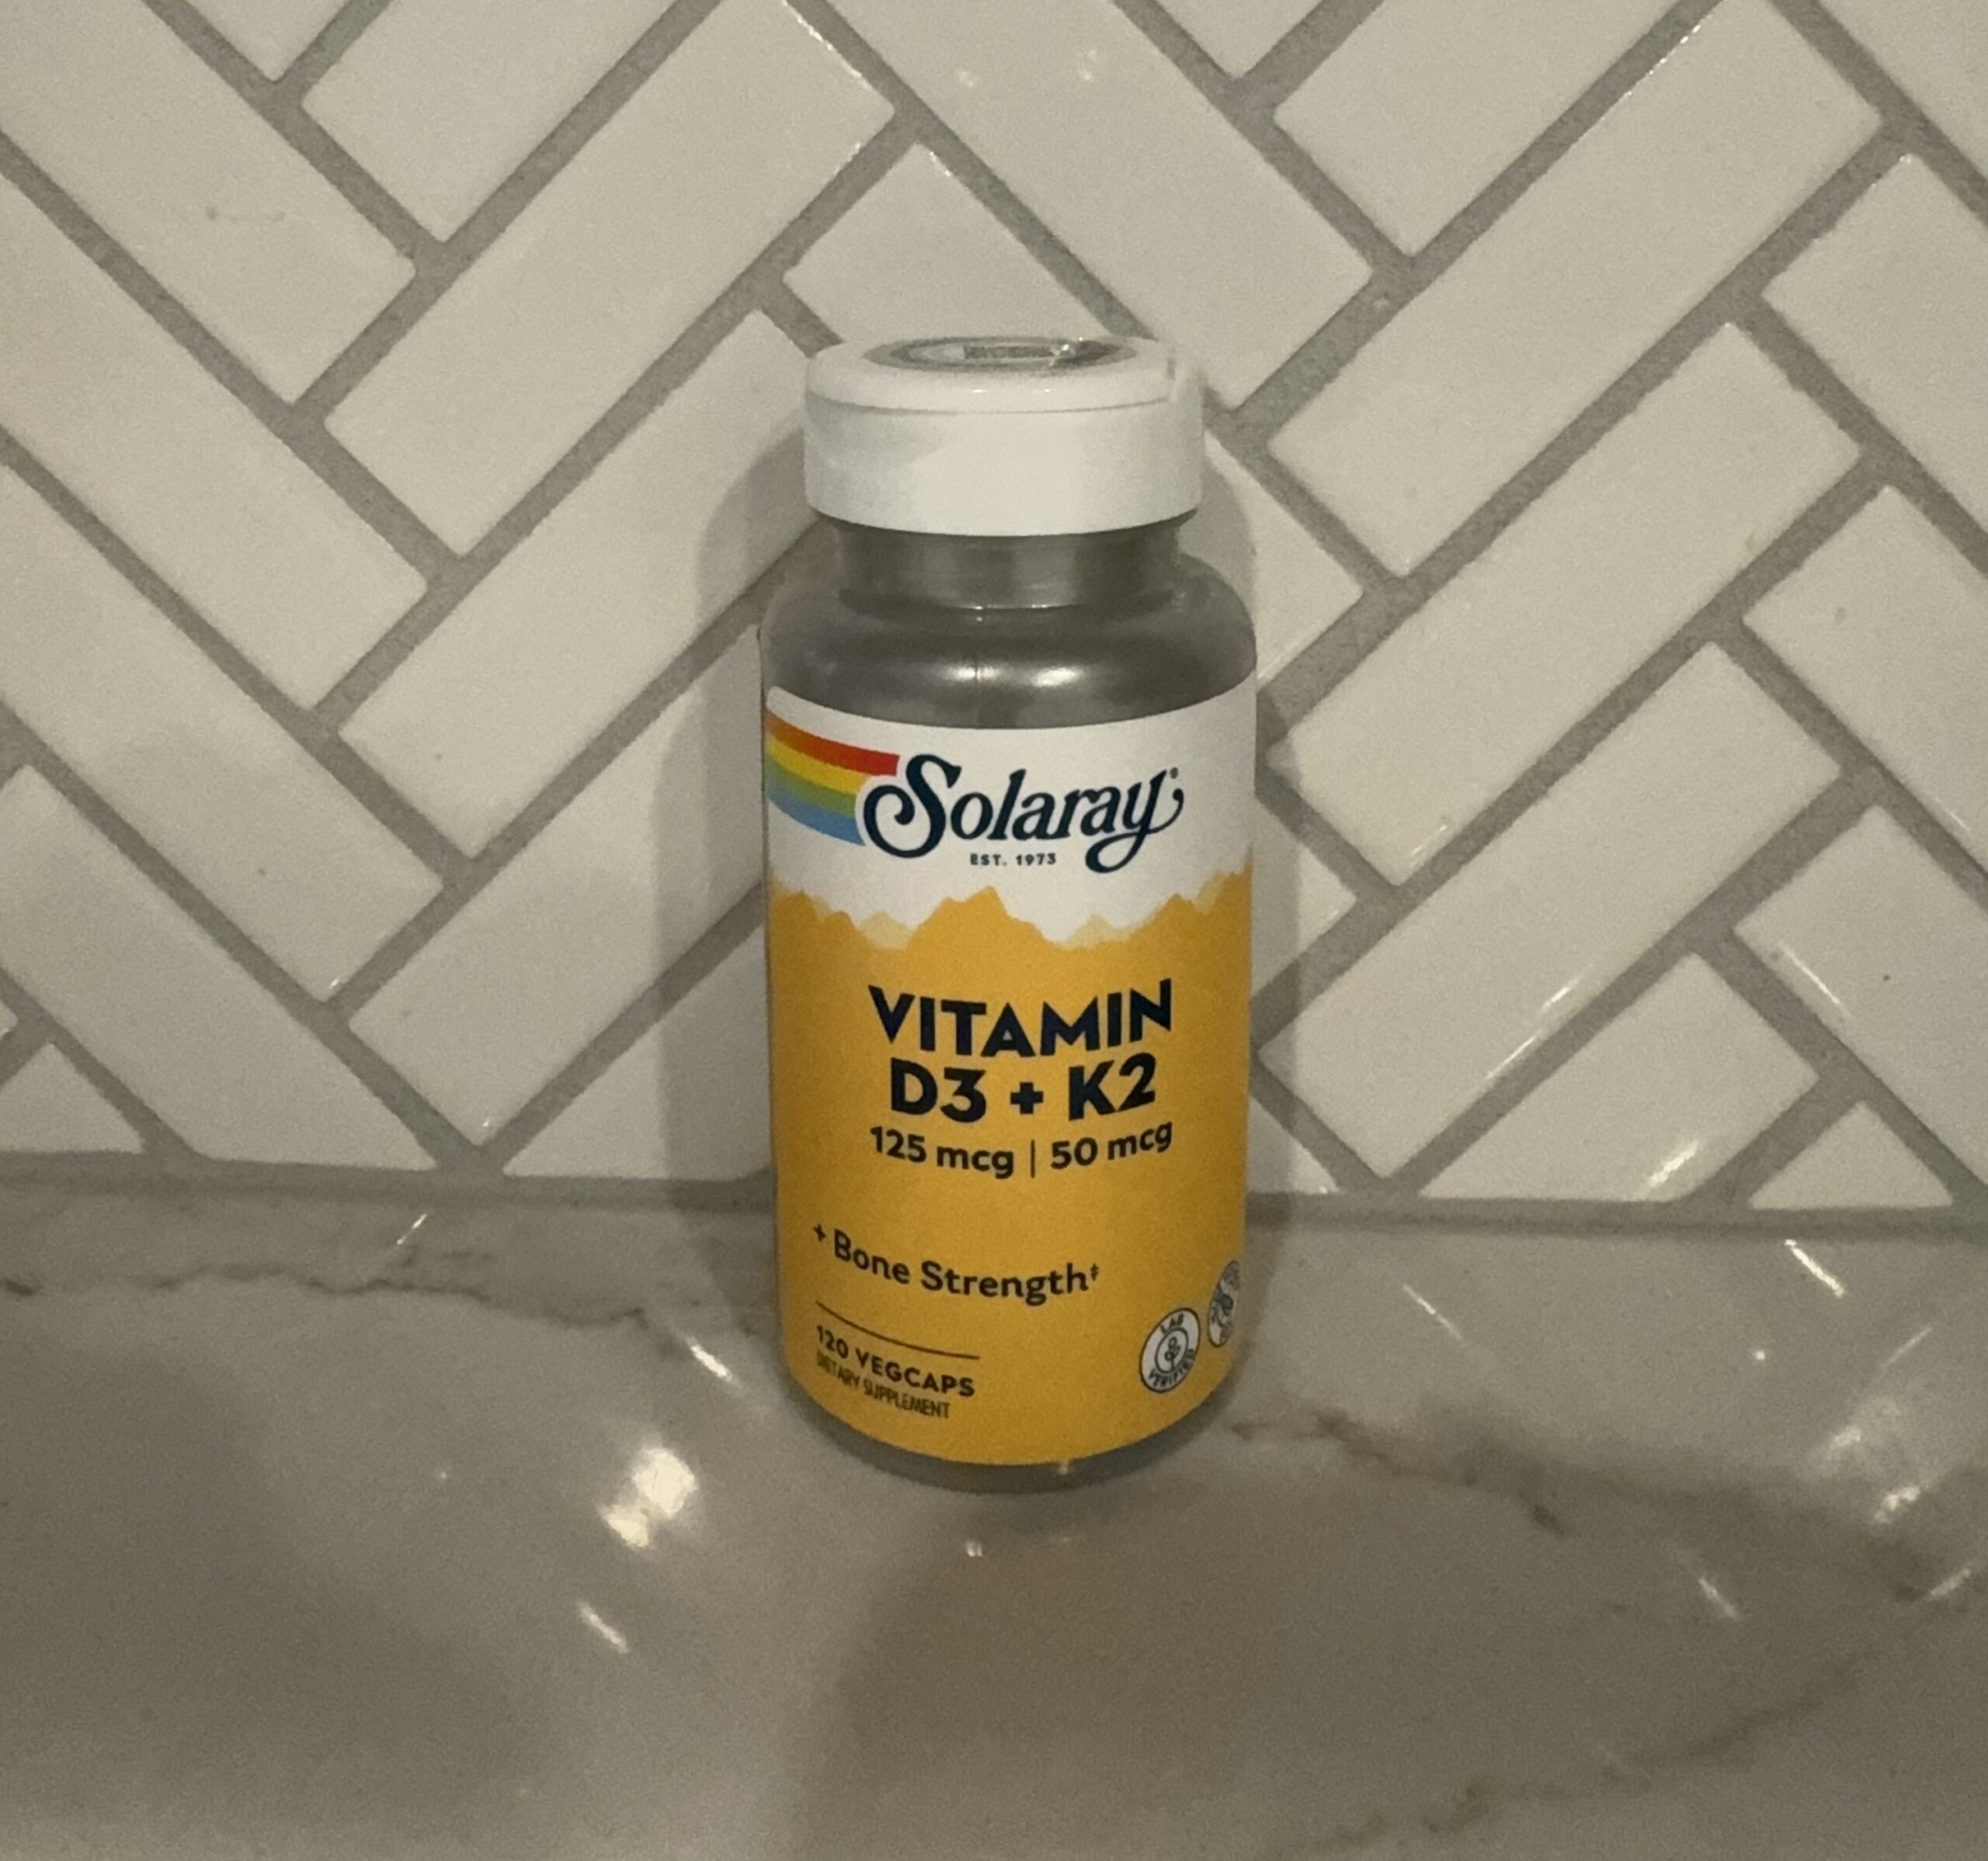 Solaray Vitamin D3 + K2 Review